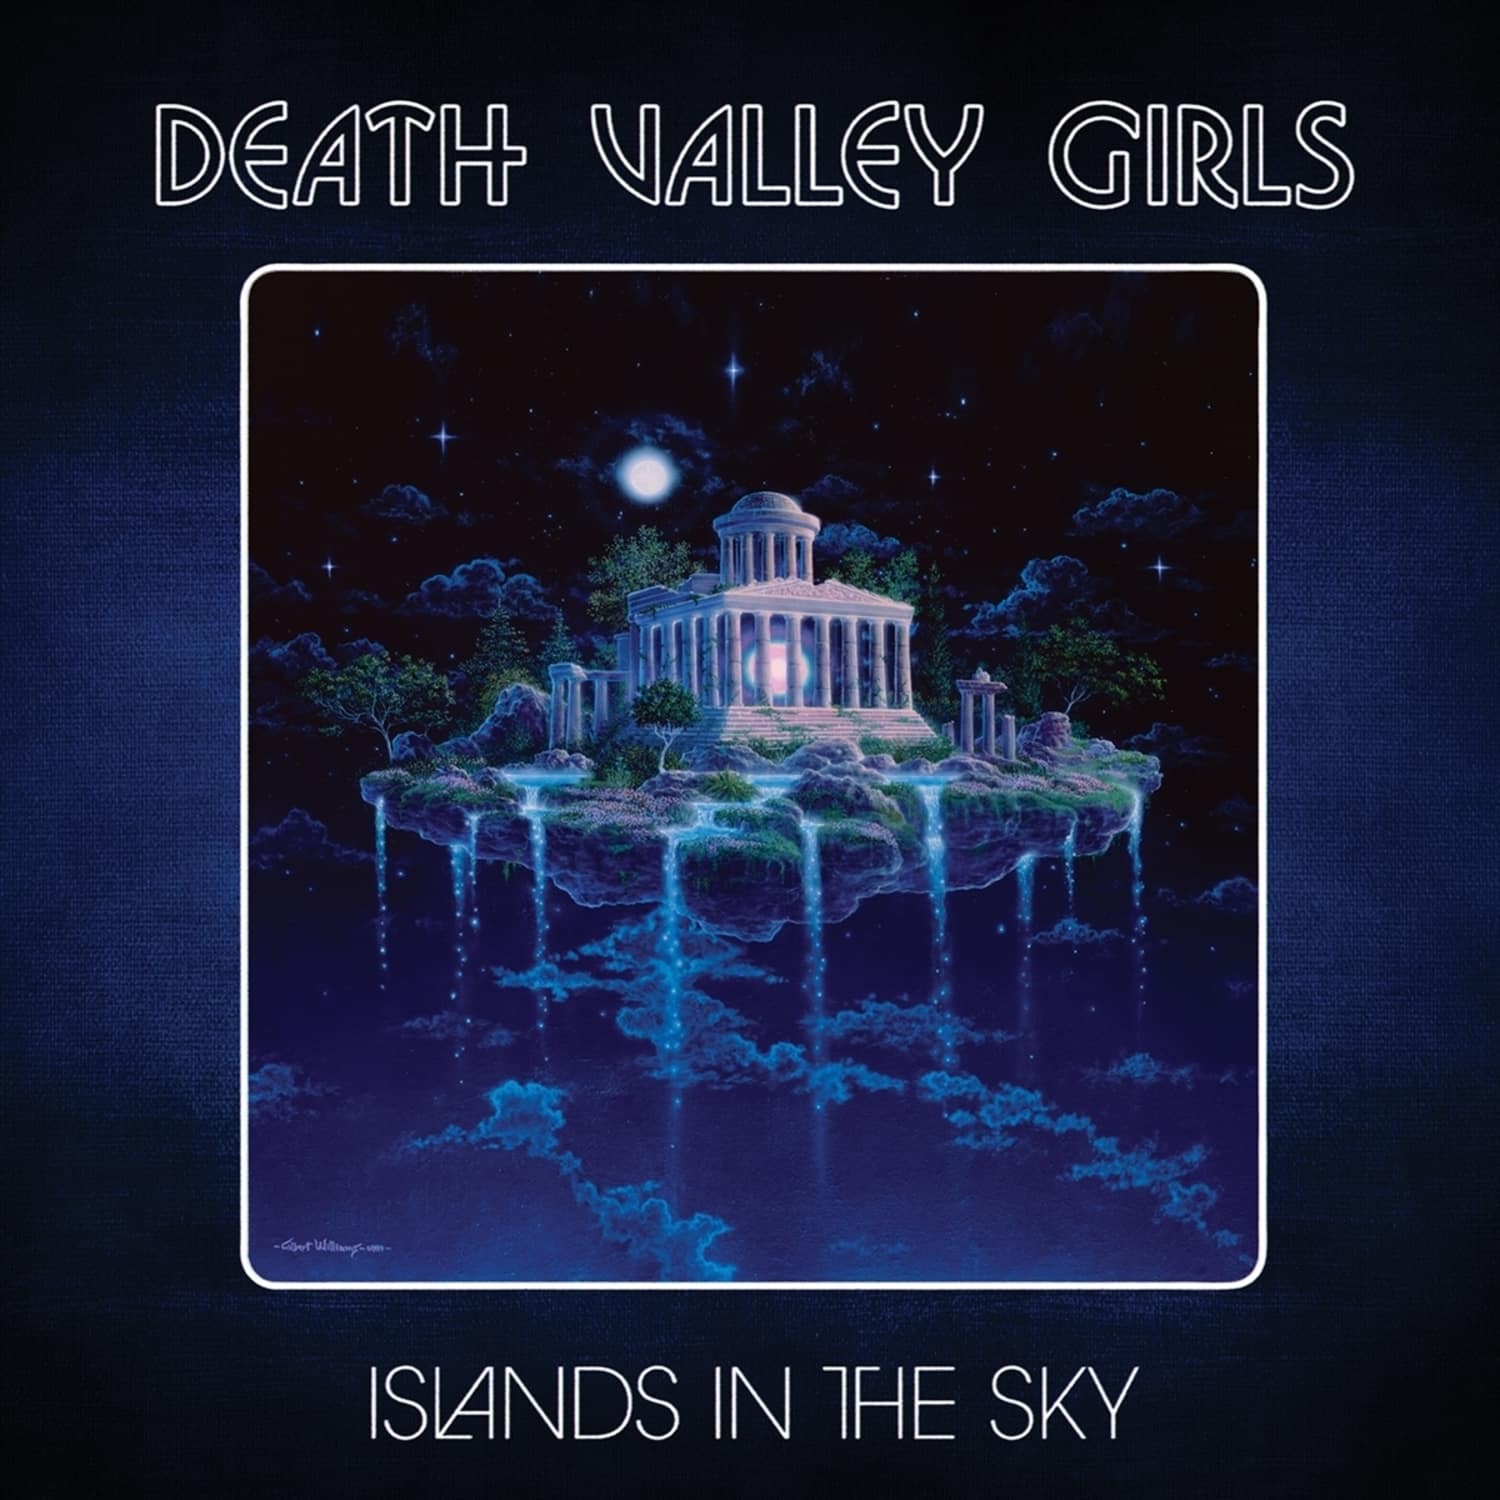 Death Valley Girls - ISLANDS IN THE SKY-LTD.GRIMACE PURPLE W / SILVER 